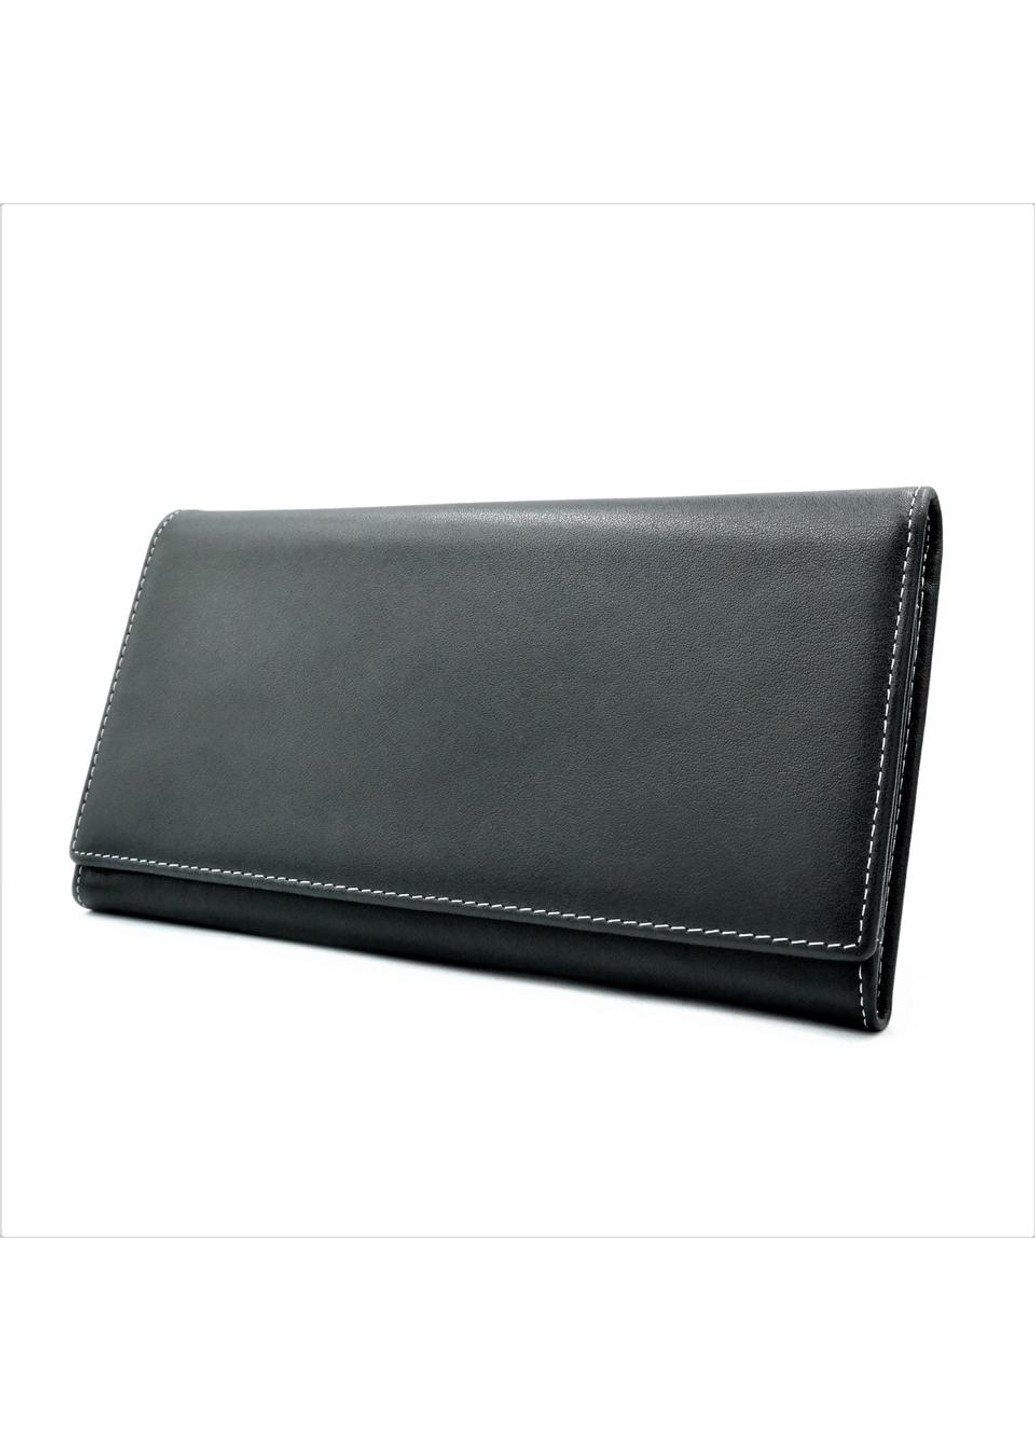 Чоловічий шкіряний клатч-гаманець 19 х 10,5 х 2,5 см Чорний wtro-165-5-40 Weatro (272950005)